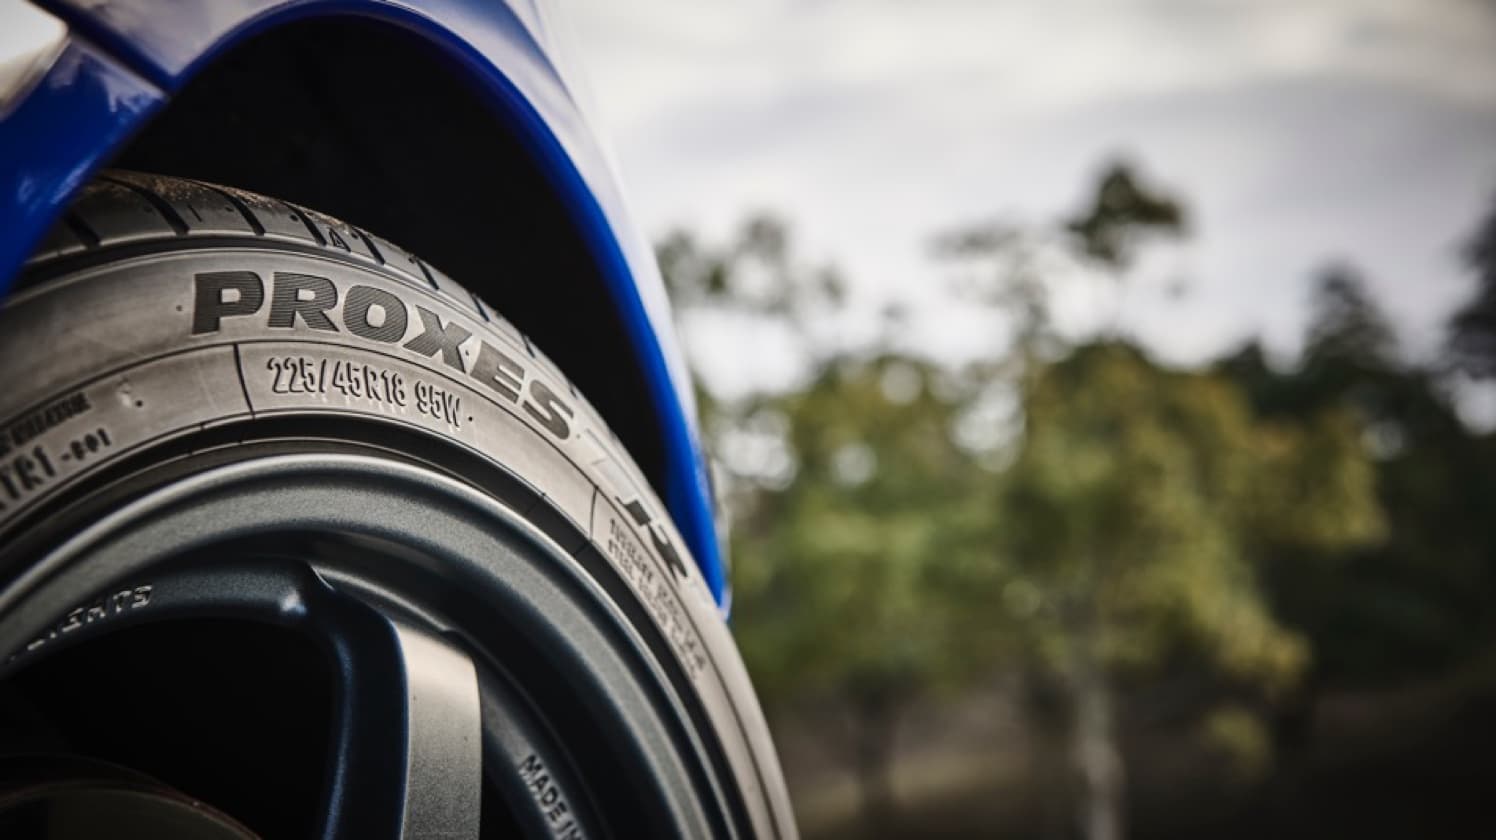 Modelos de neumáticos Toyo Tires